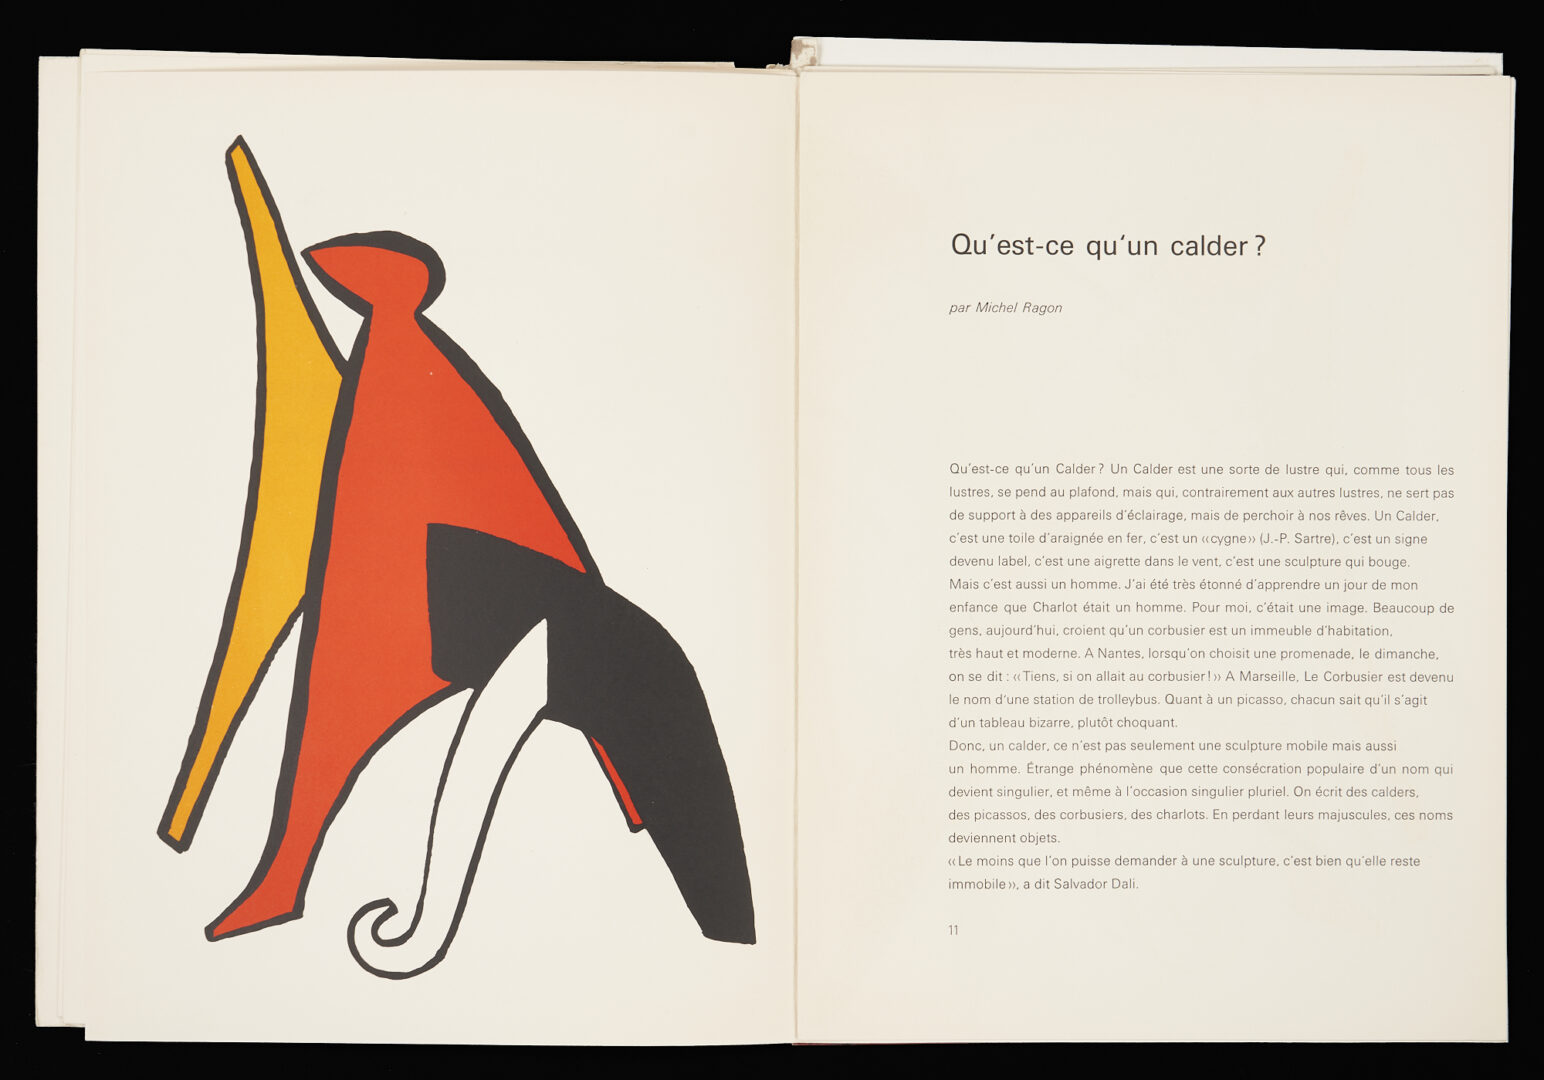 Lot 701: Alexander Calder Derrier le Miroir, plus 2 Lithographs, Matisse & Picasso